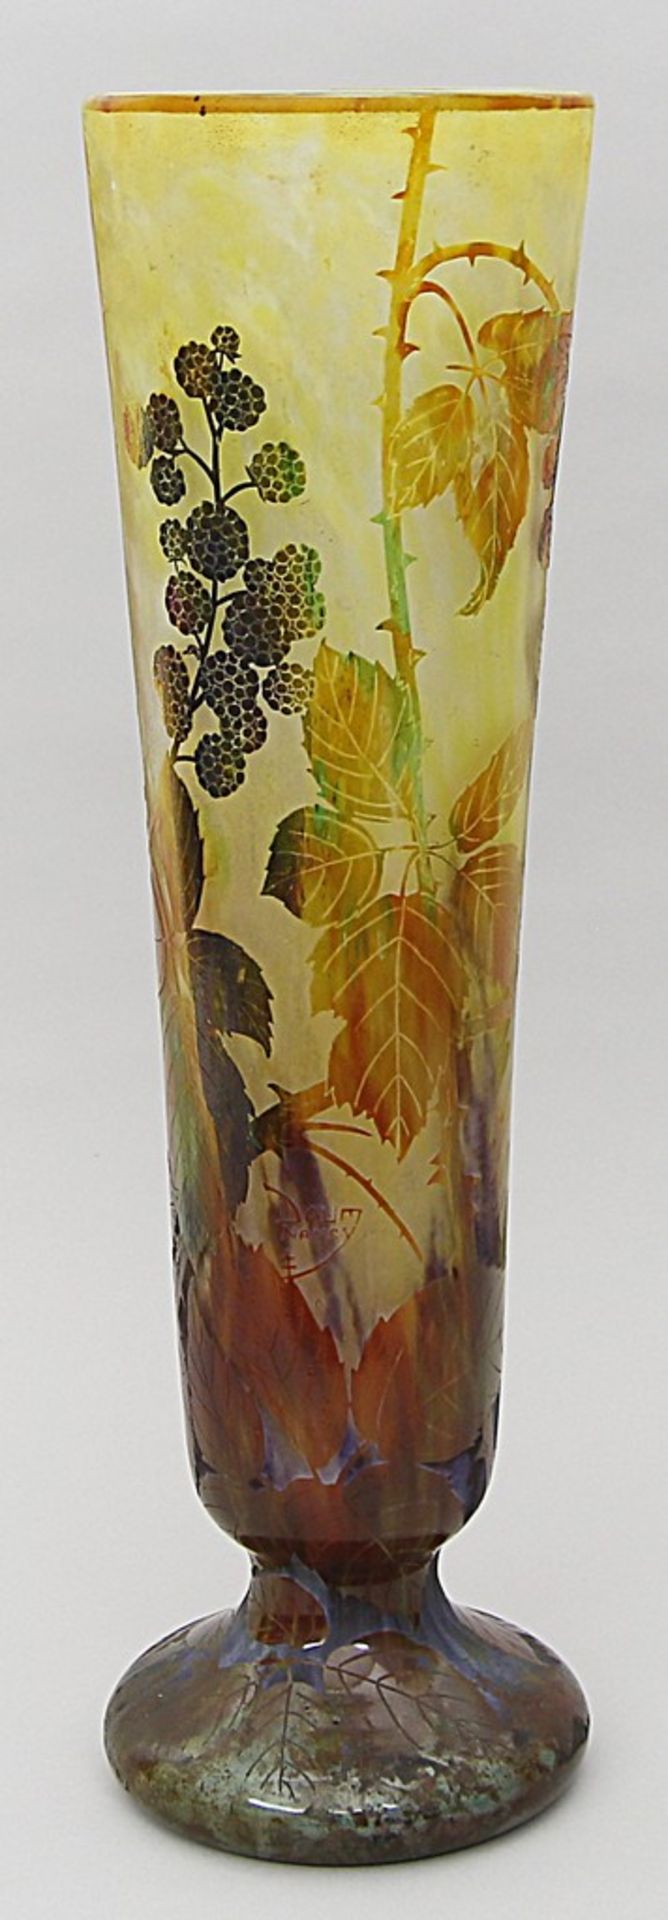 Jugendstil-Vase, Daum Nancy. Farbloses, matt geätztes Glas mit verschiedenfarbigen Pu